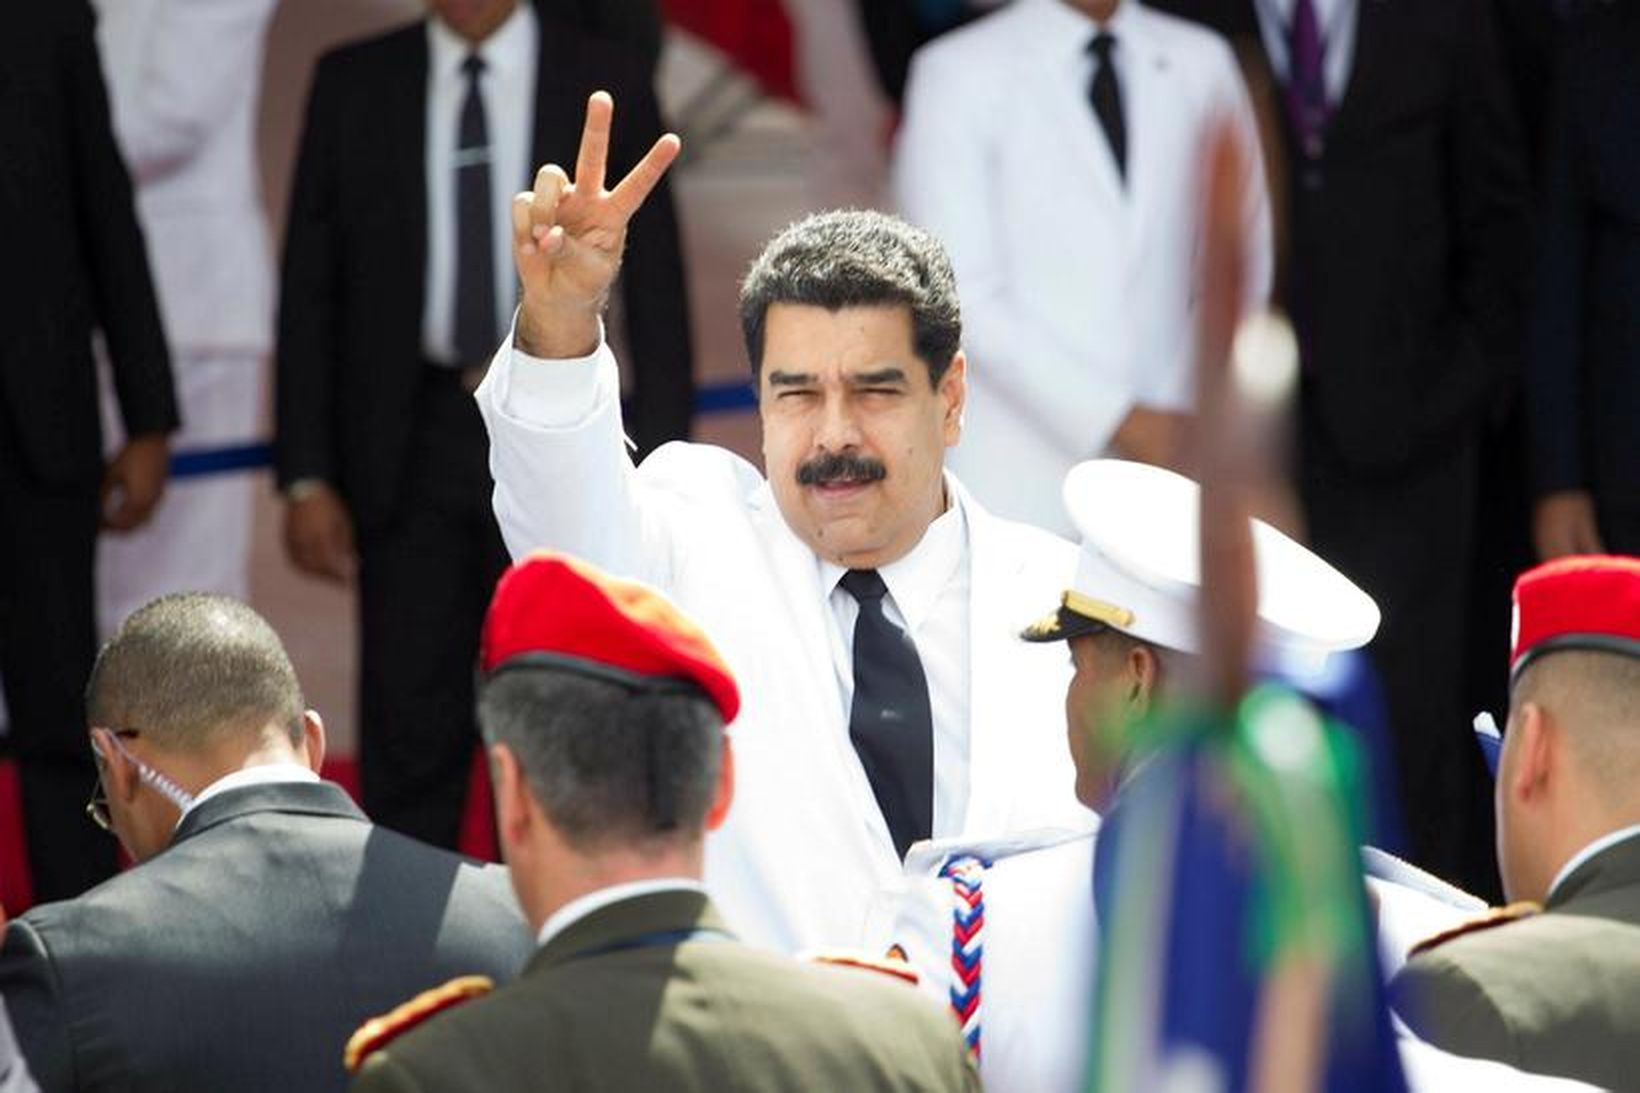 Niculas Maduro, forseti Venesúela, stendur í ströngu þessa dagana.